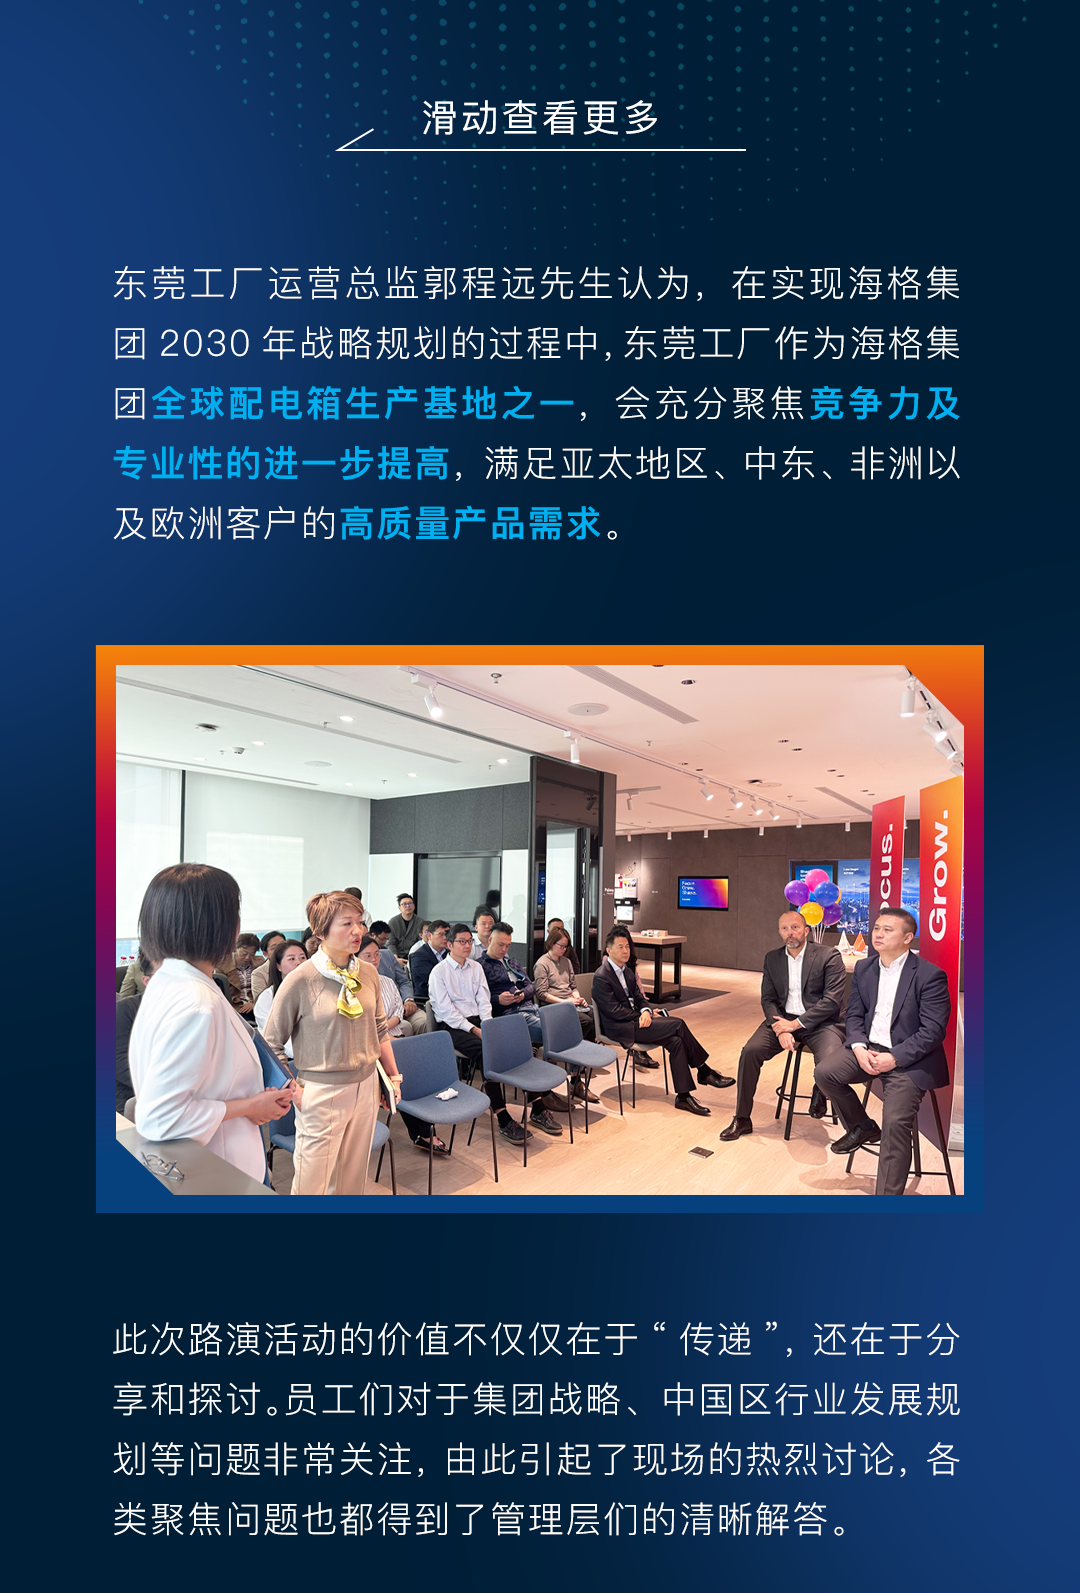 海格集团2030年战略规划第二阶段中国区路演活动，擘画电气世界未来！